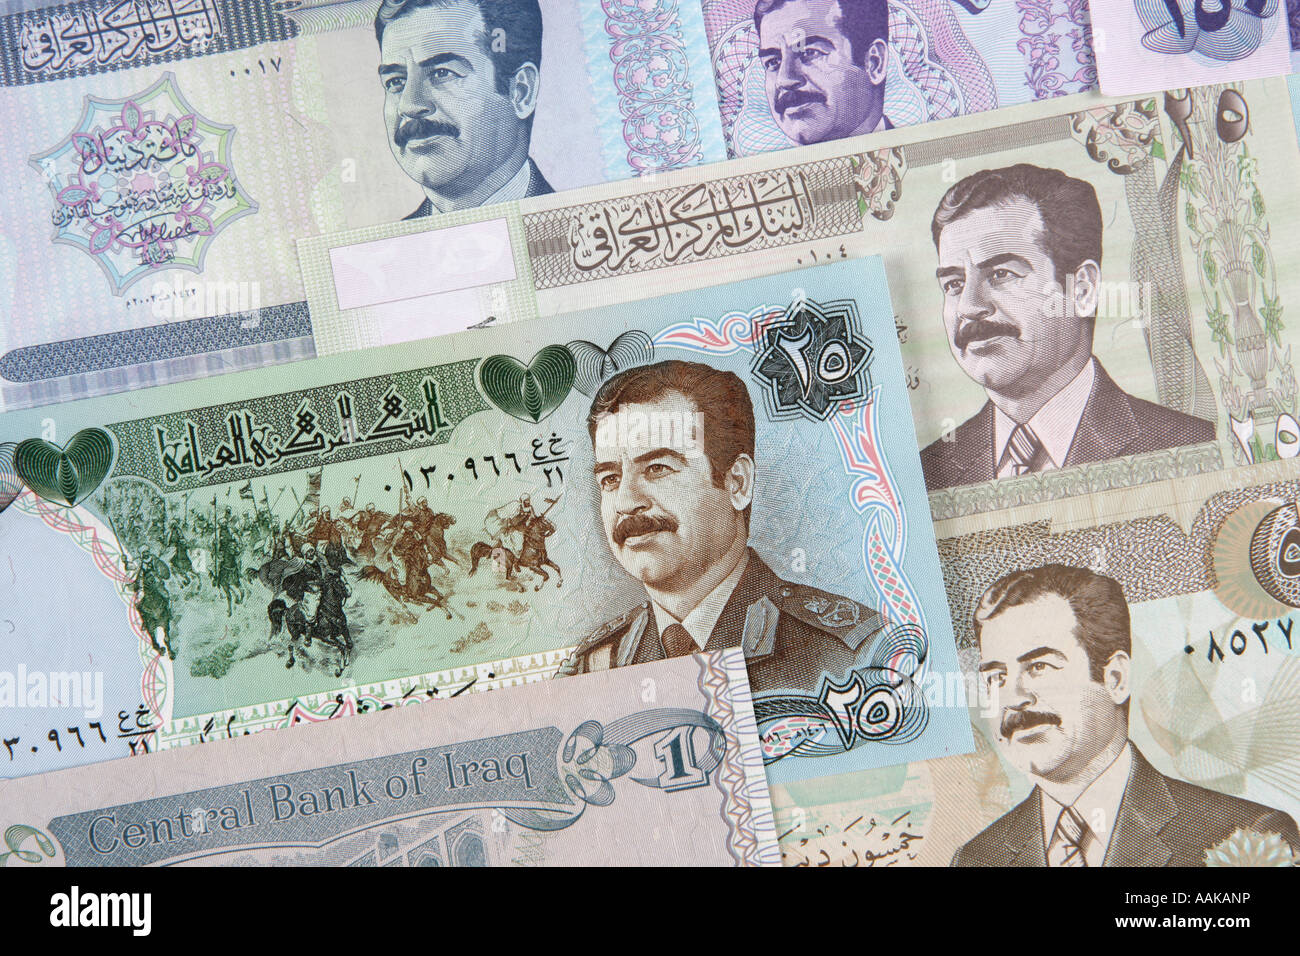 Varie la carta moneta Dinar note dall'Iraq queste fatture sono del vecchio regime gestito dal dittatore Suddam Hussein Foto Stock